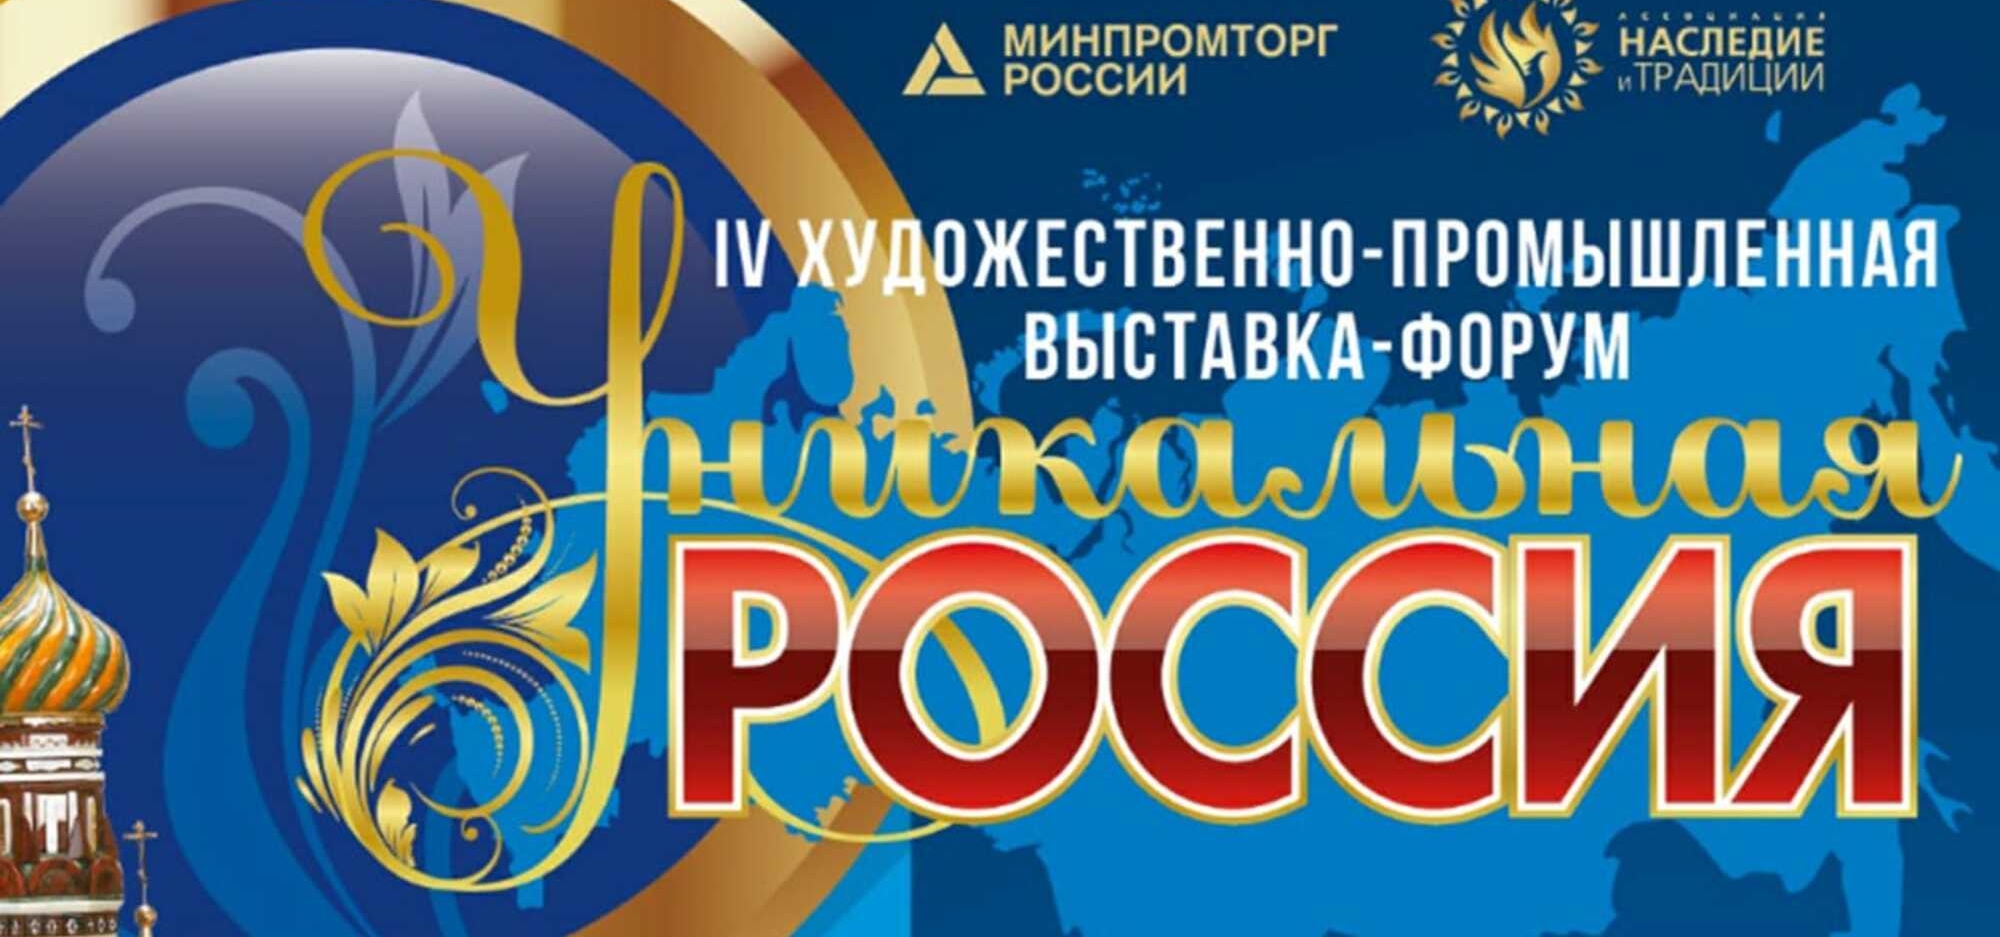 В Москве пройдет IV Художественно-промышленная выставка-форум «Уникальная Россия»